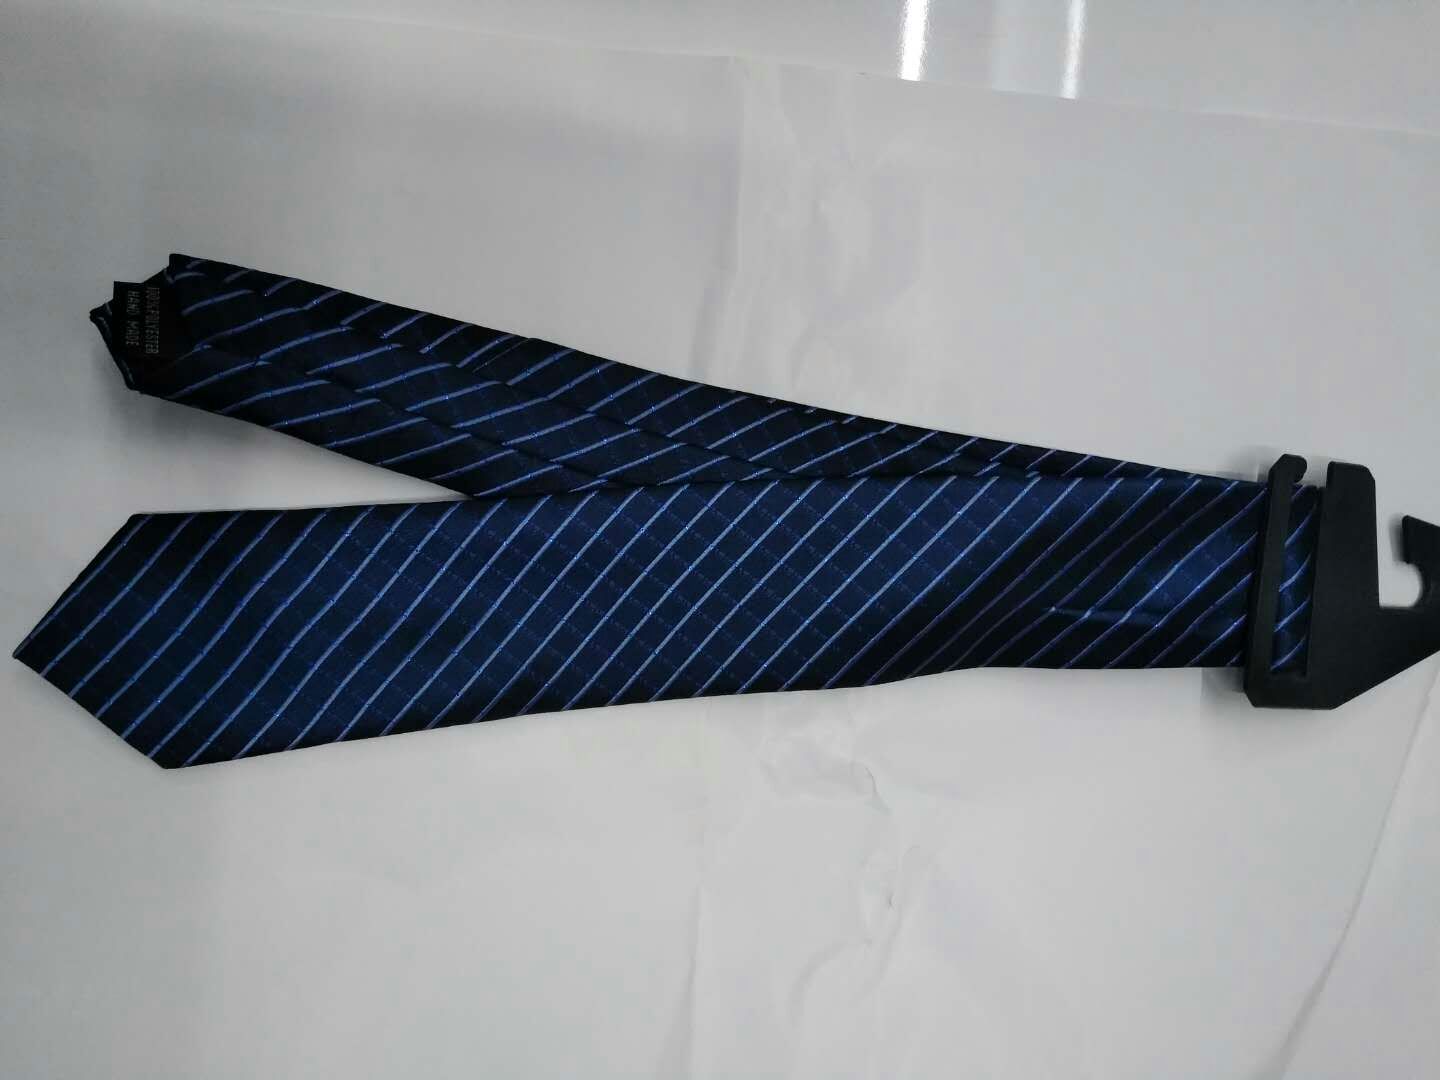 现货休闲领带定制厂家直销领带厂家休闲男士正装领带